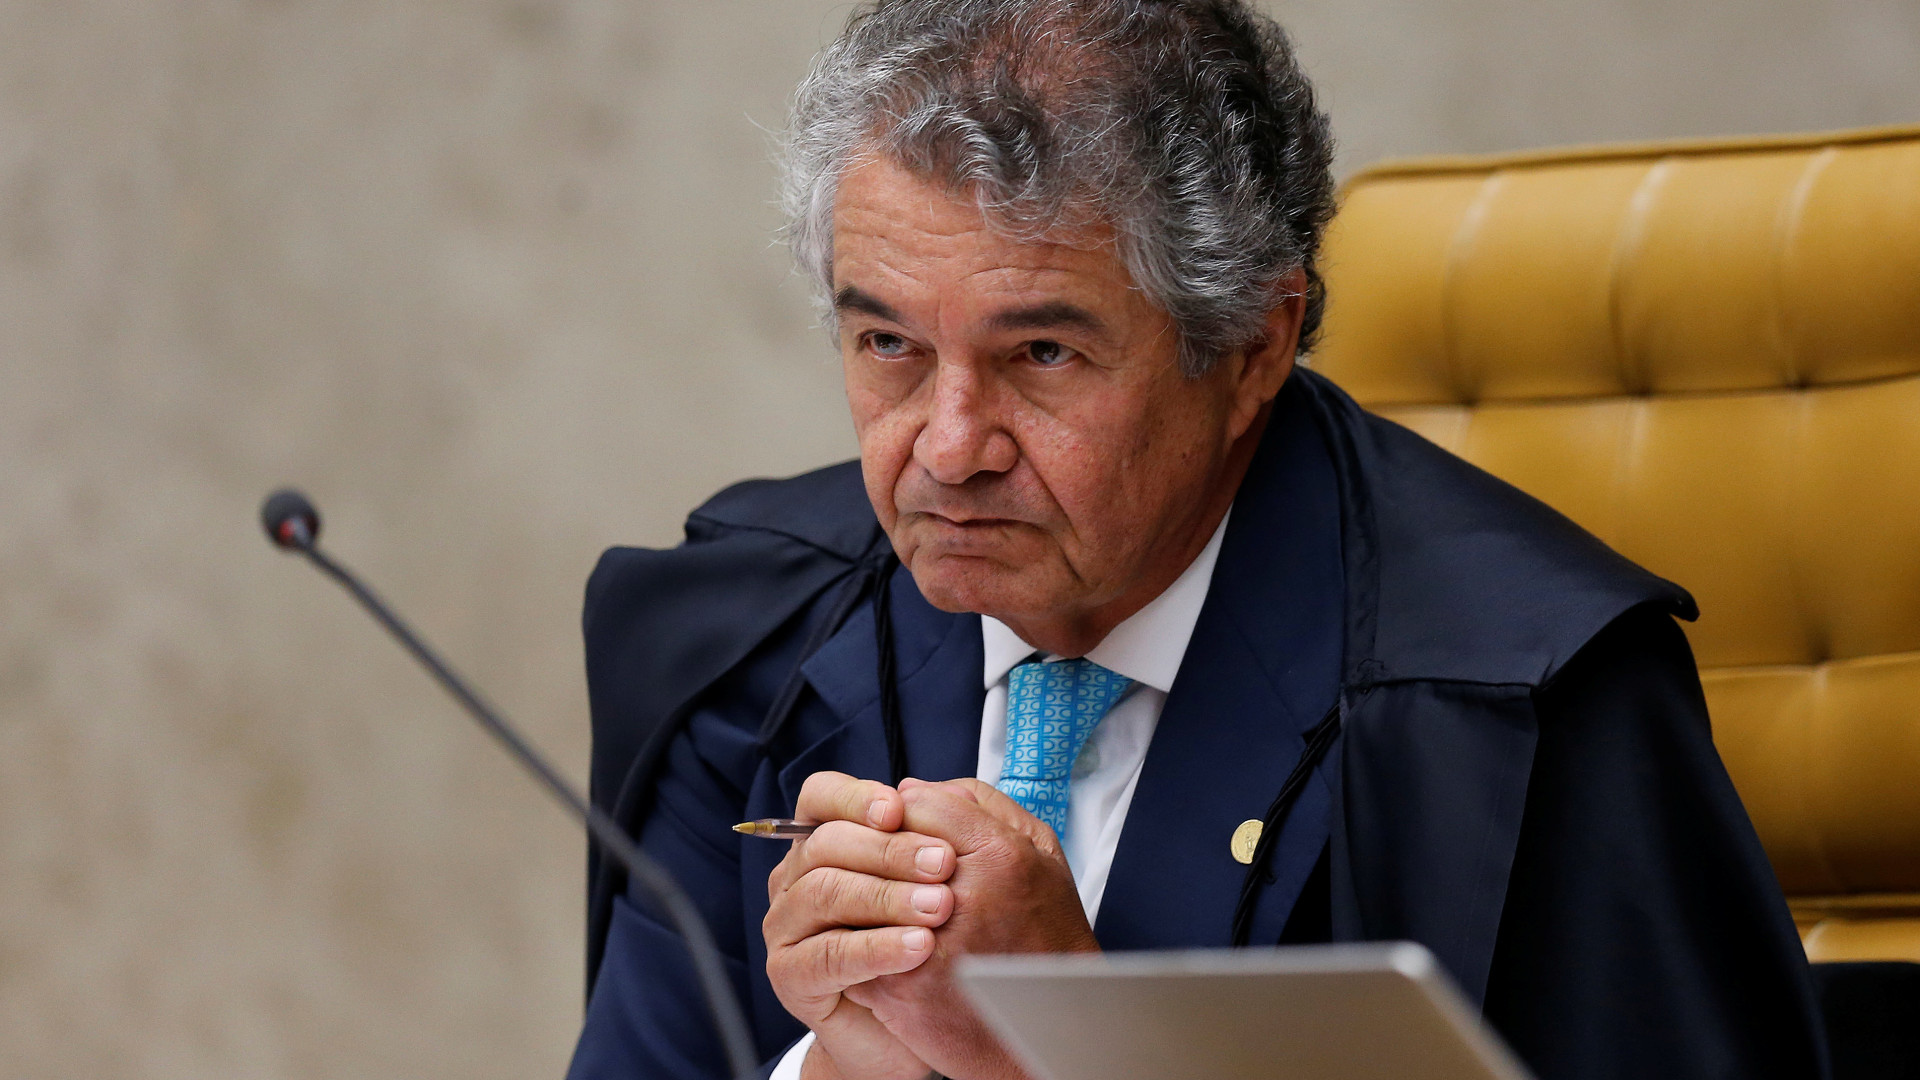 STF começa a julgar pedido do PDT para afastar Guedes; Marco Aurélio vota contra